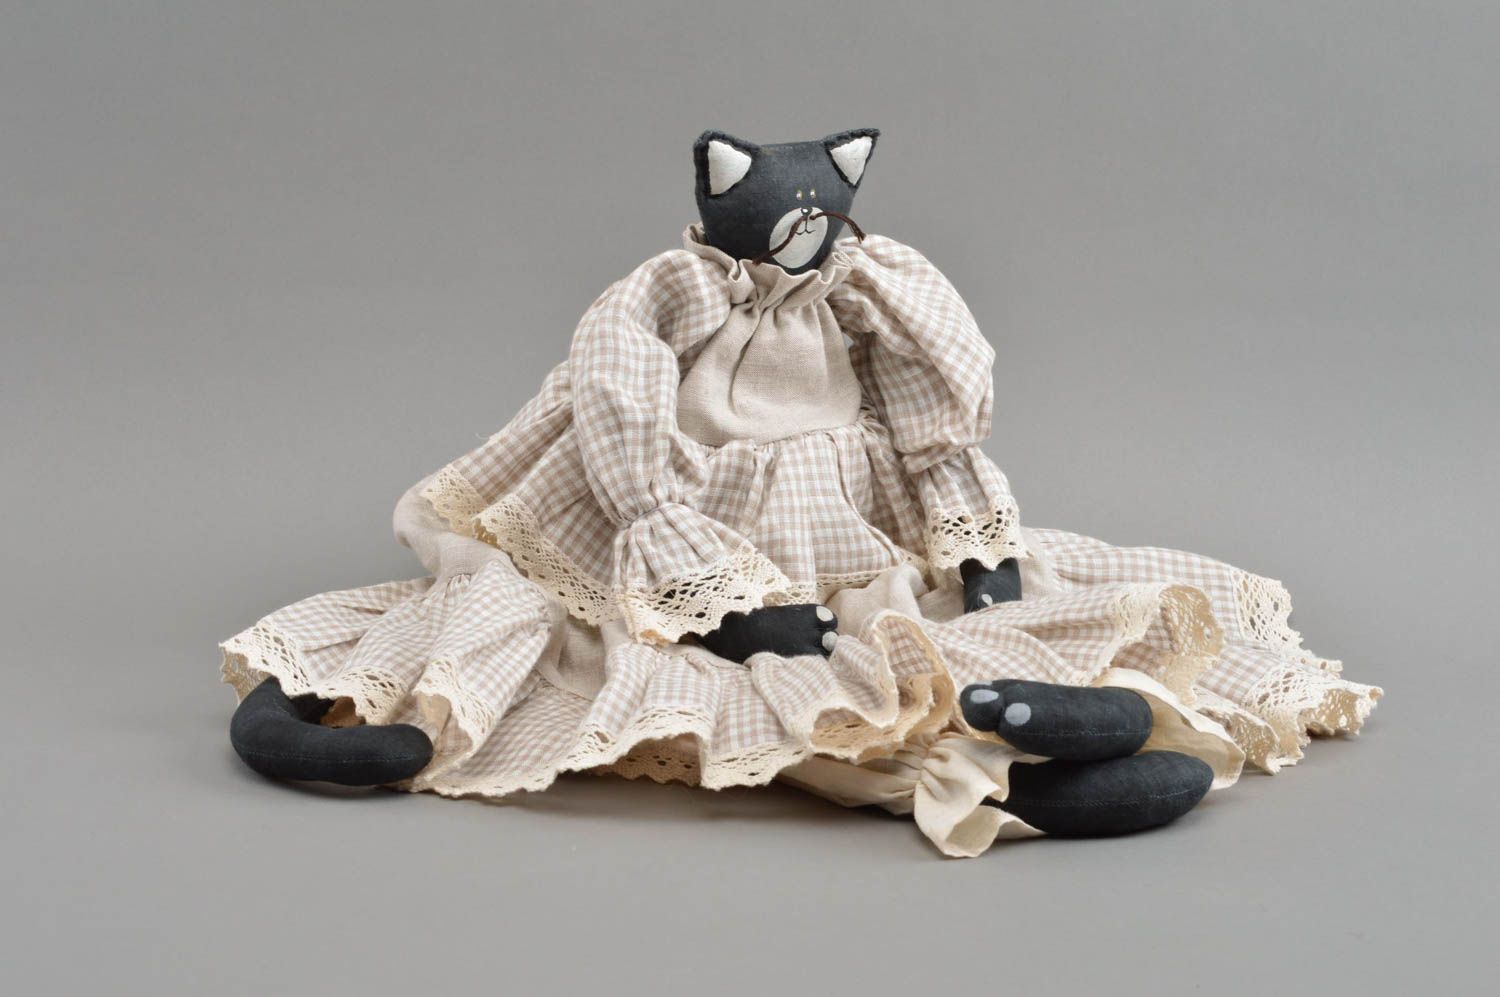 Textil Kuscheltier Katze schwarz im hellen Kleid handmade schön originell foto 4